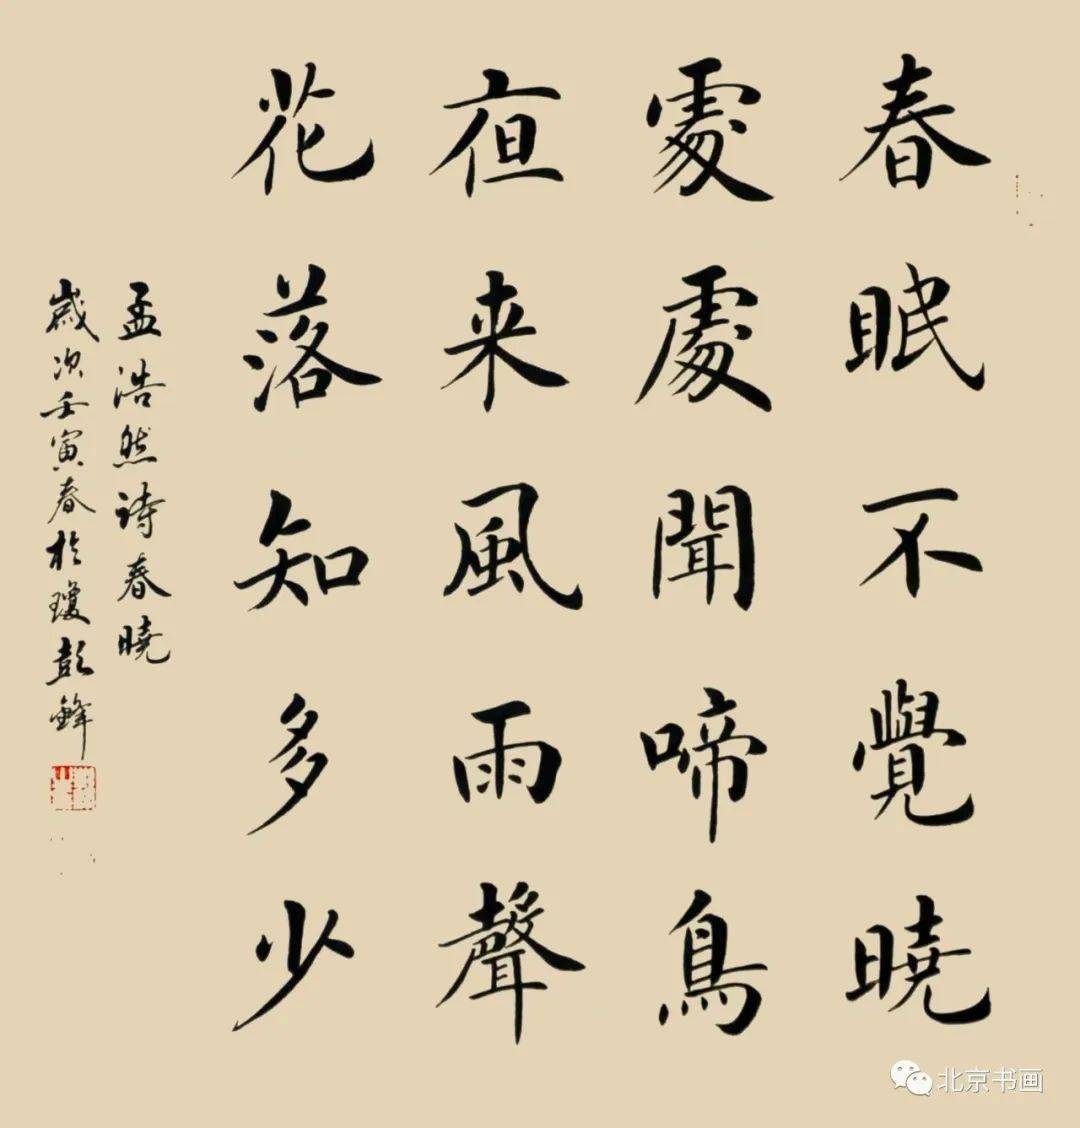 【北京书画】 第1871期 著名书法家彭锋先生作品集(12)